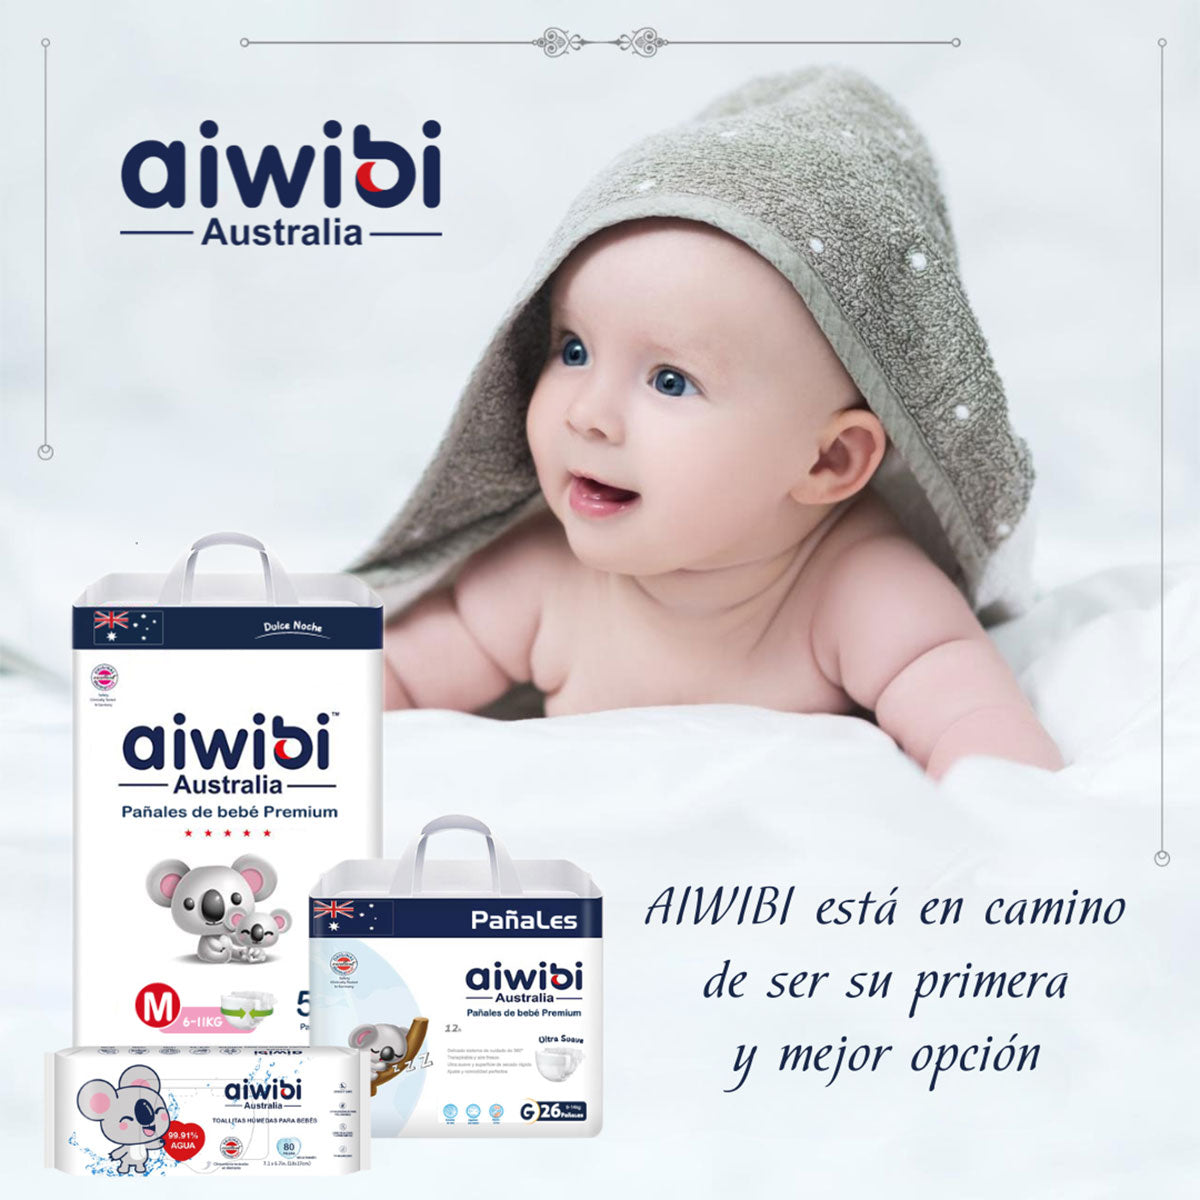 Pañales Aiwibi Premium Dulce Noche M (54 unidades) - 🇦🇺 Producto Australiano